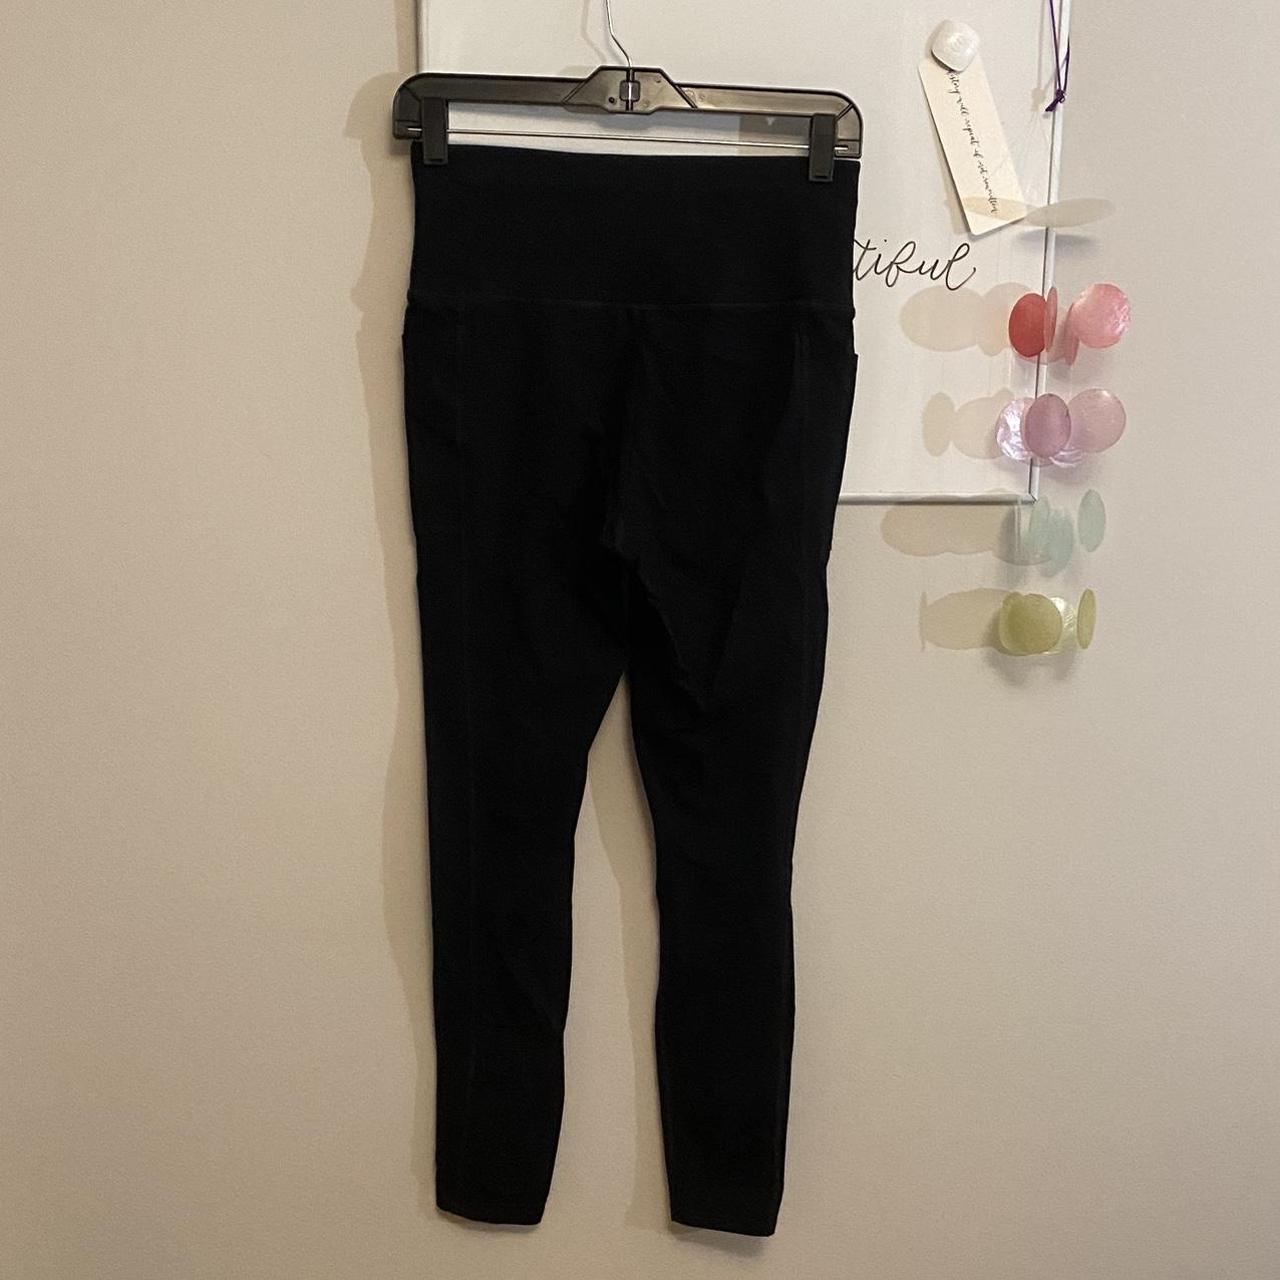 Lightly worn Skechers leggings, full length (~30” - Depop